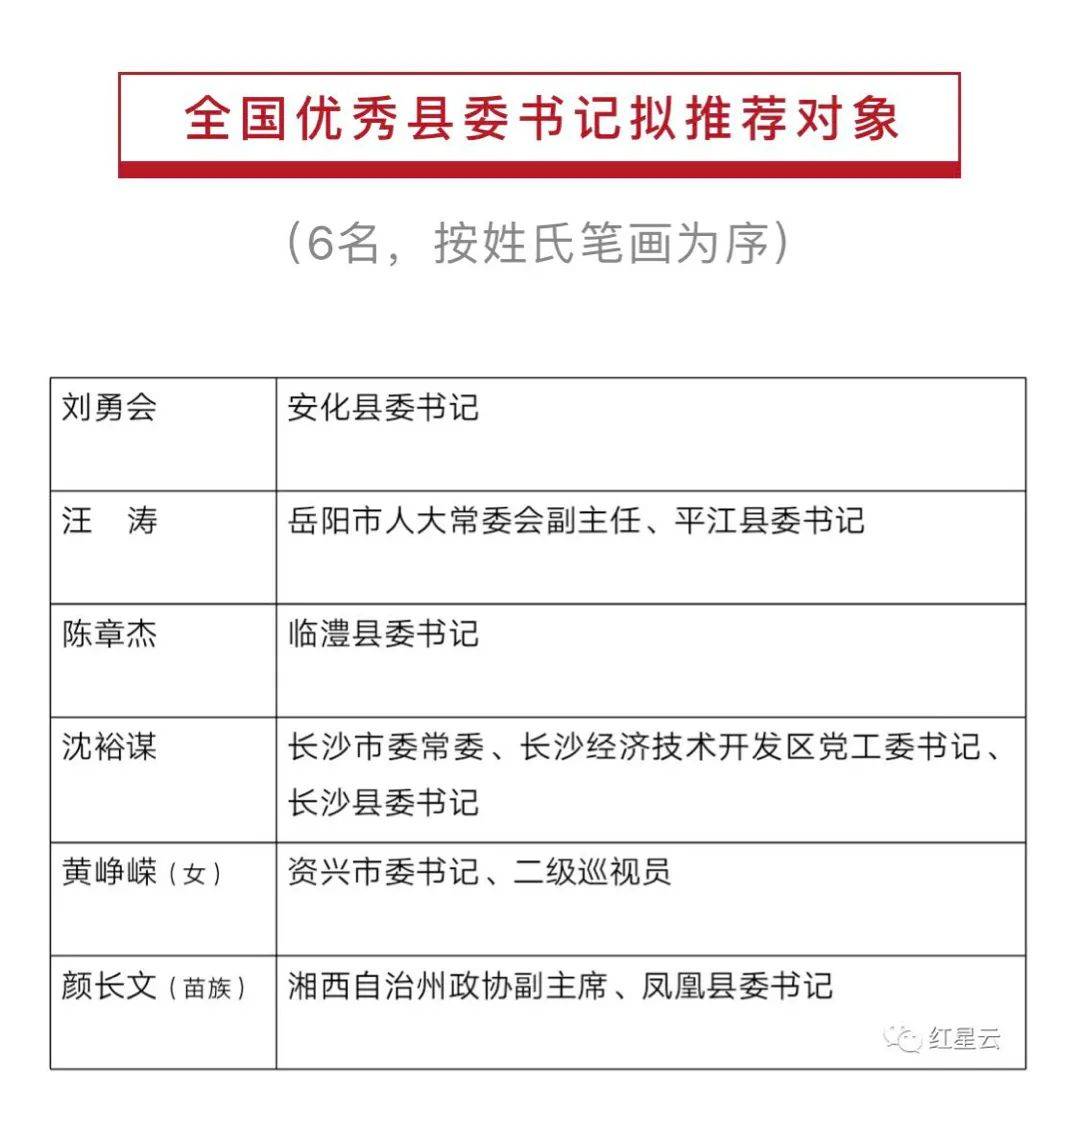 湖南省委确定6名全国优秀县委书记拟推荐对象正在公示